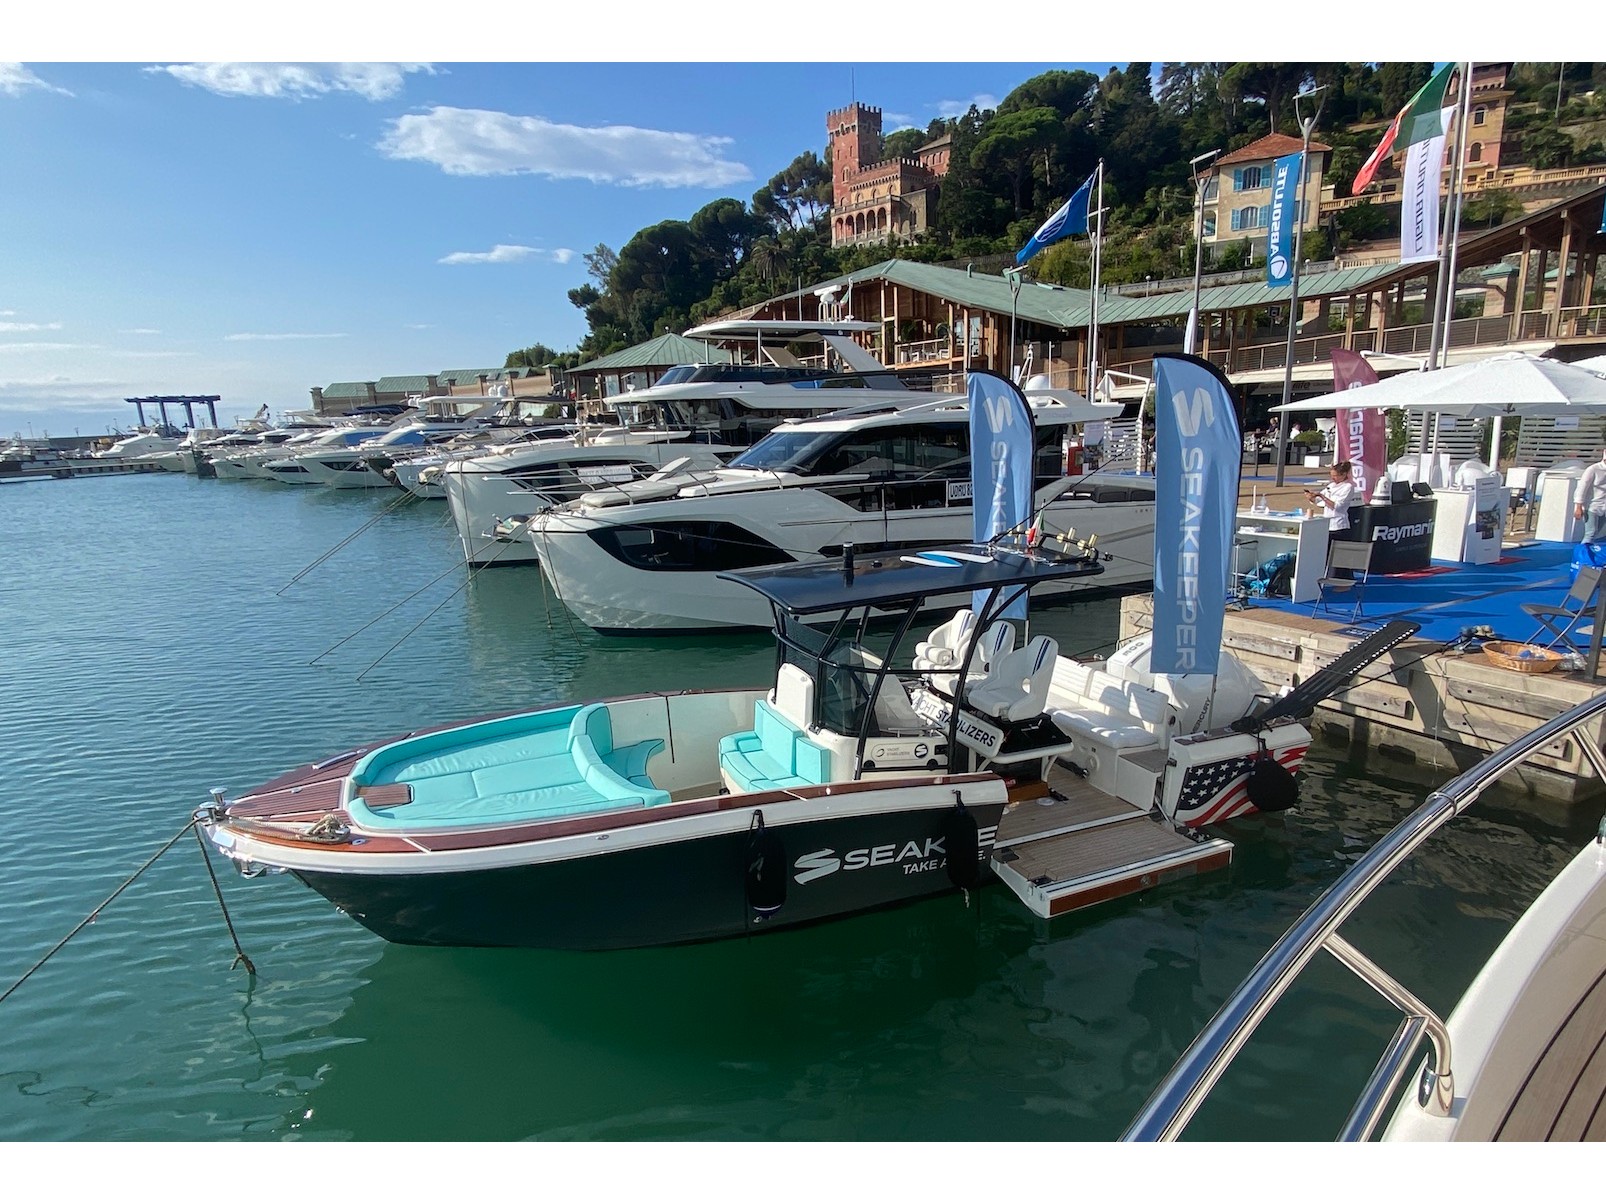 White Shark 285 - Yacht Charter Liguria & Boat hire in Italy Italian Riviera La Spezia Province La Spezia Porto Mirabello 3